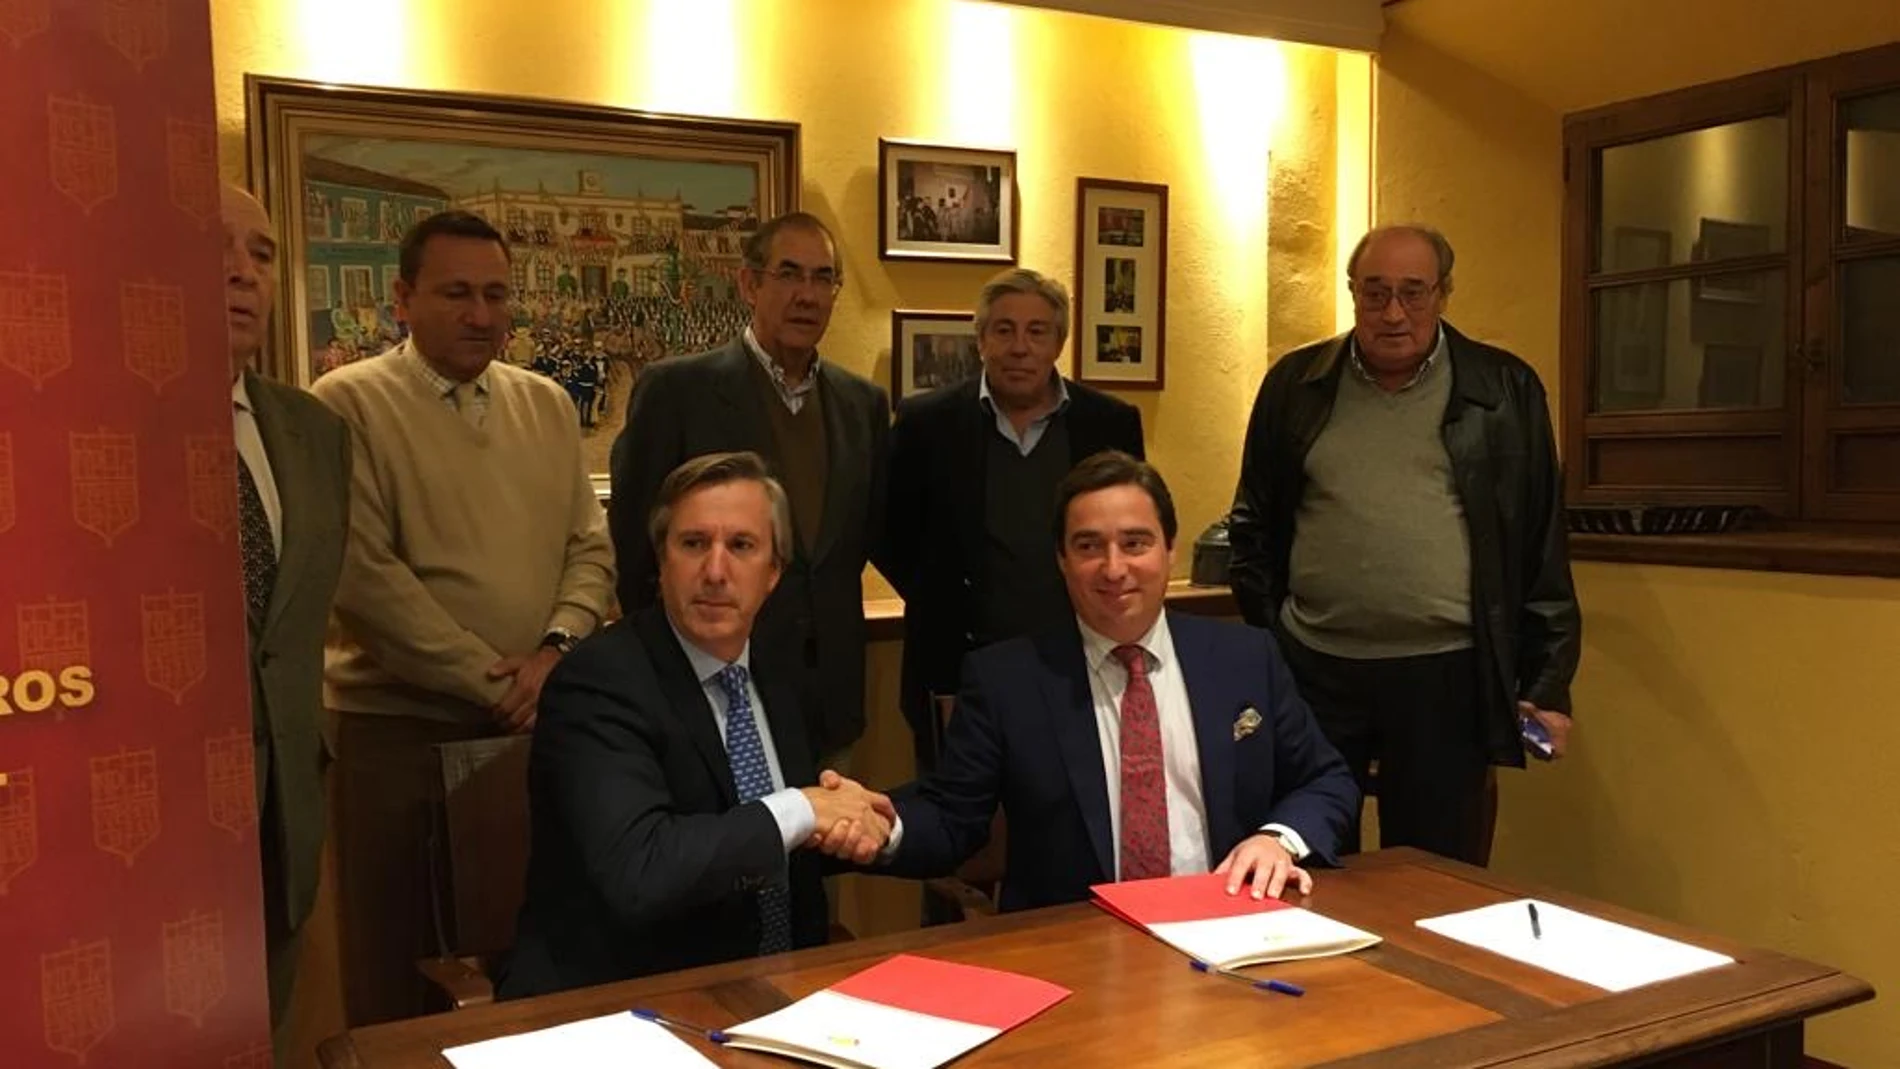 Imagen tras la firma del acuerdo entre Rafael Centeno y José María Garzón